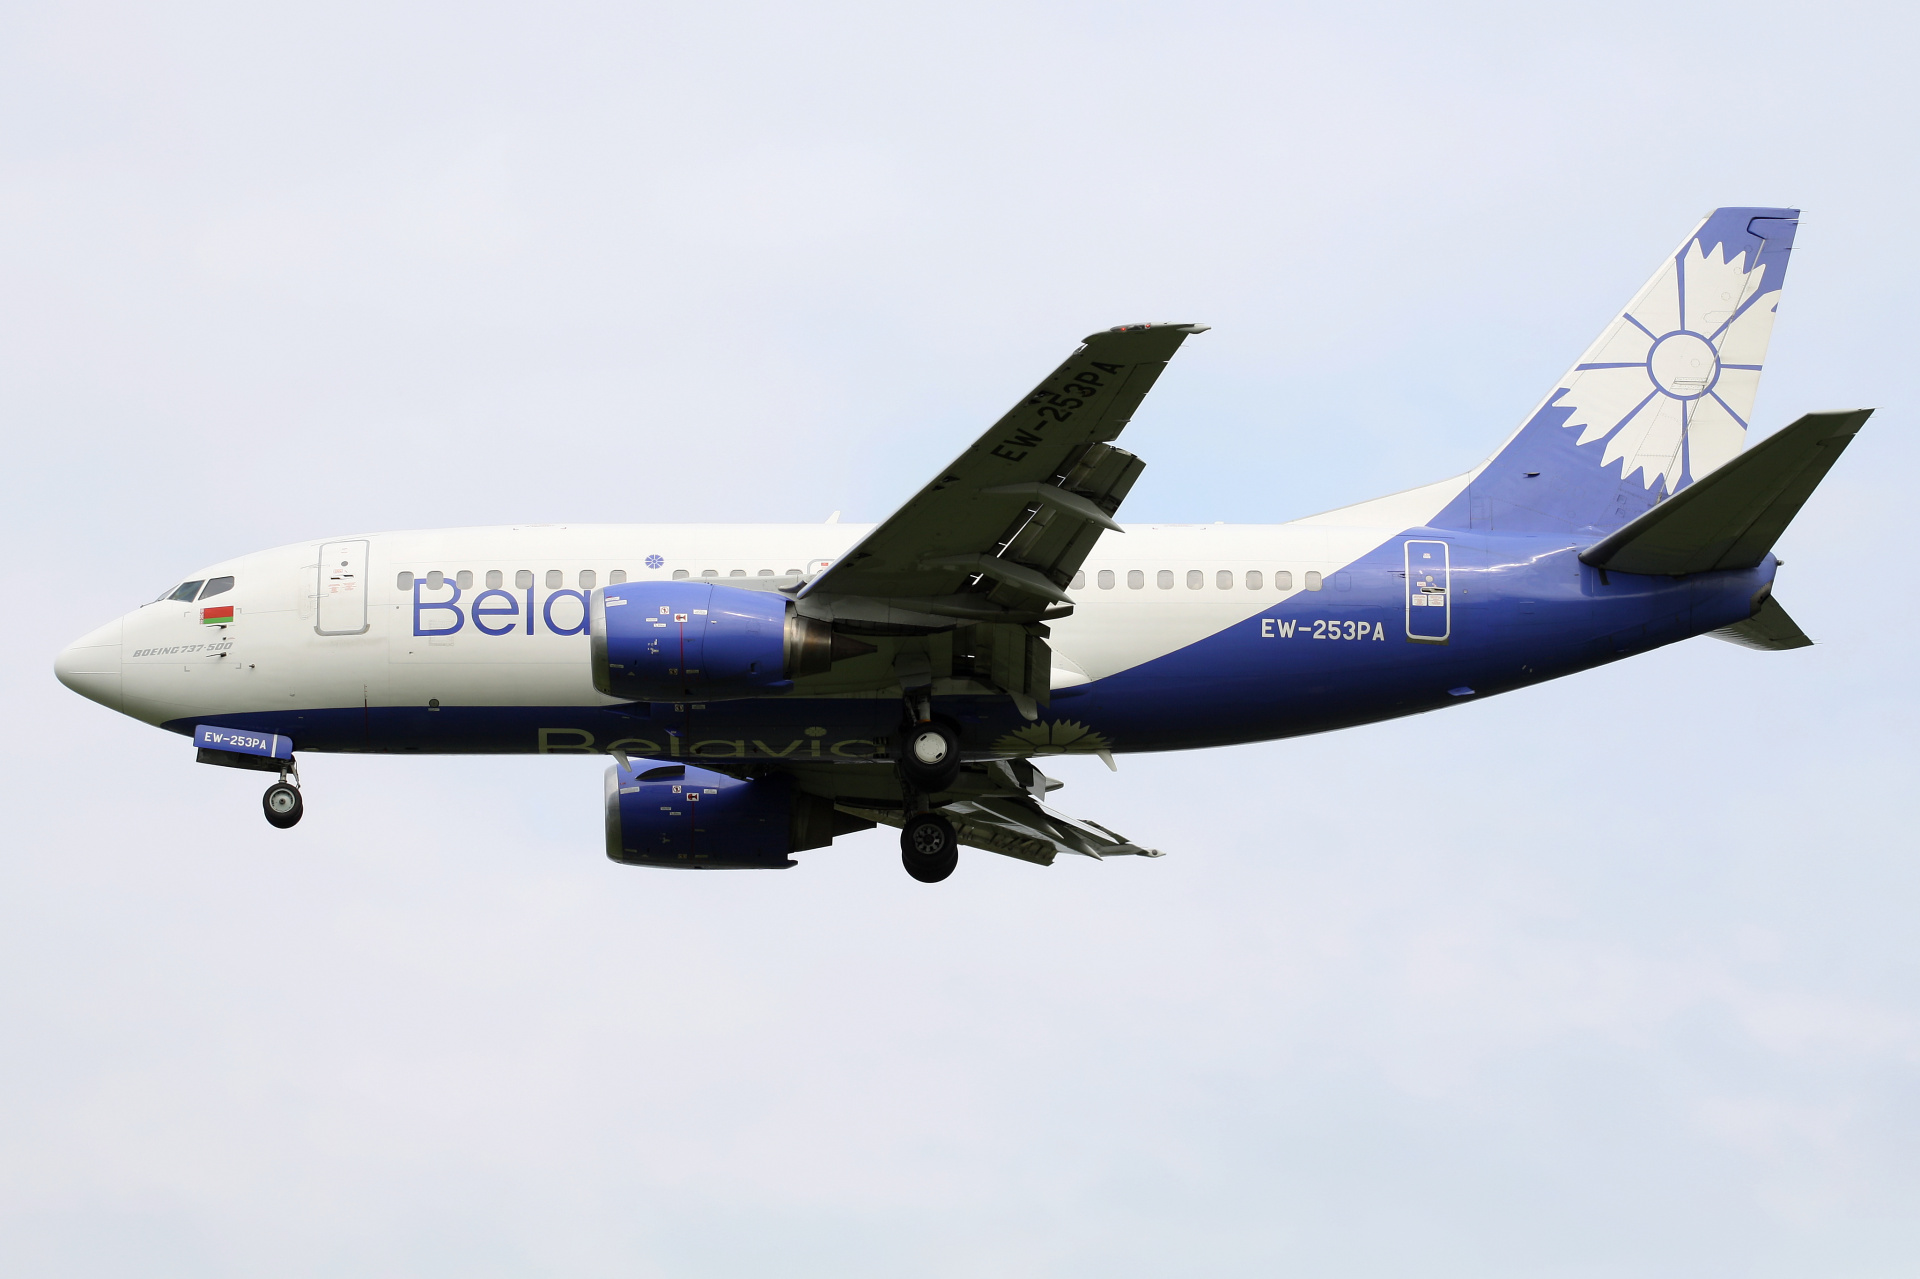 EW-253PA (Aircraft » EPWA Spotting » Boeing 737-500 » Belavia)